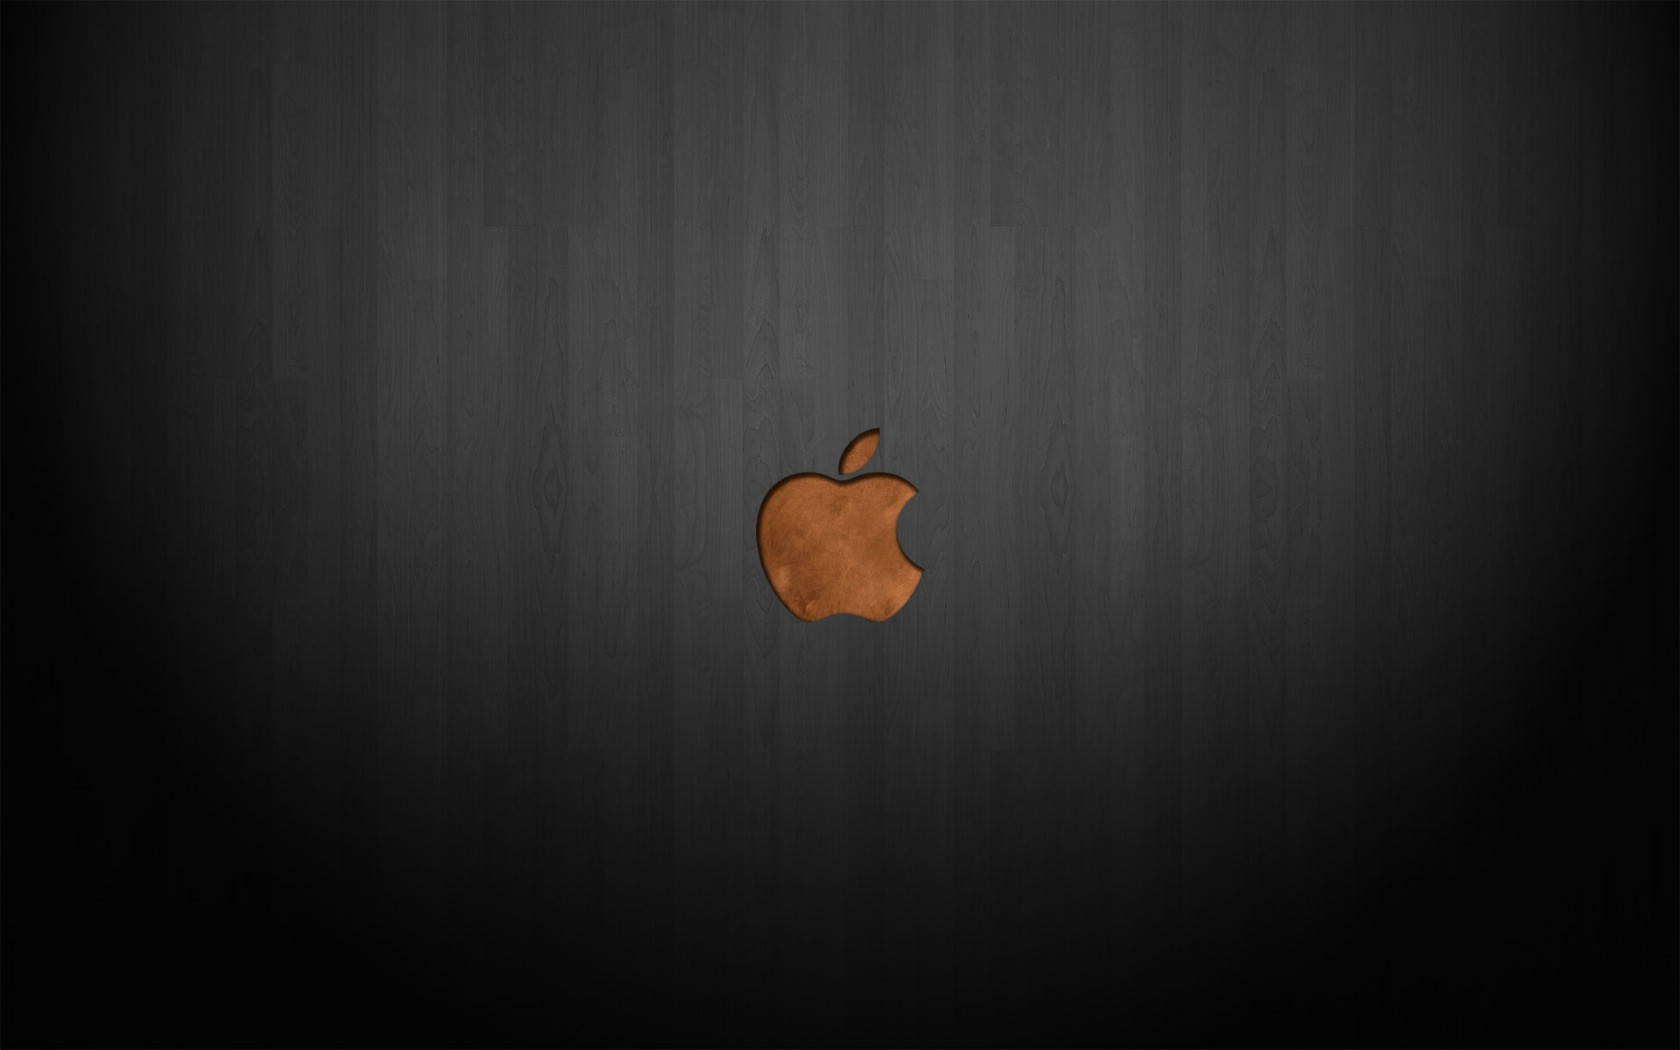 壁纸1680x1050Apple主题 44 16壁纸 Apple主题壁纸 Apple主题图片 Apple主题素材 系统壁纸 系统图库 系统图片素材桌面壁纸